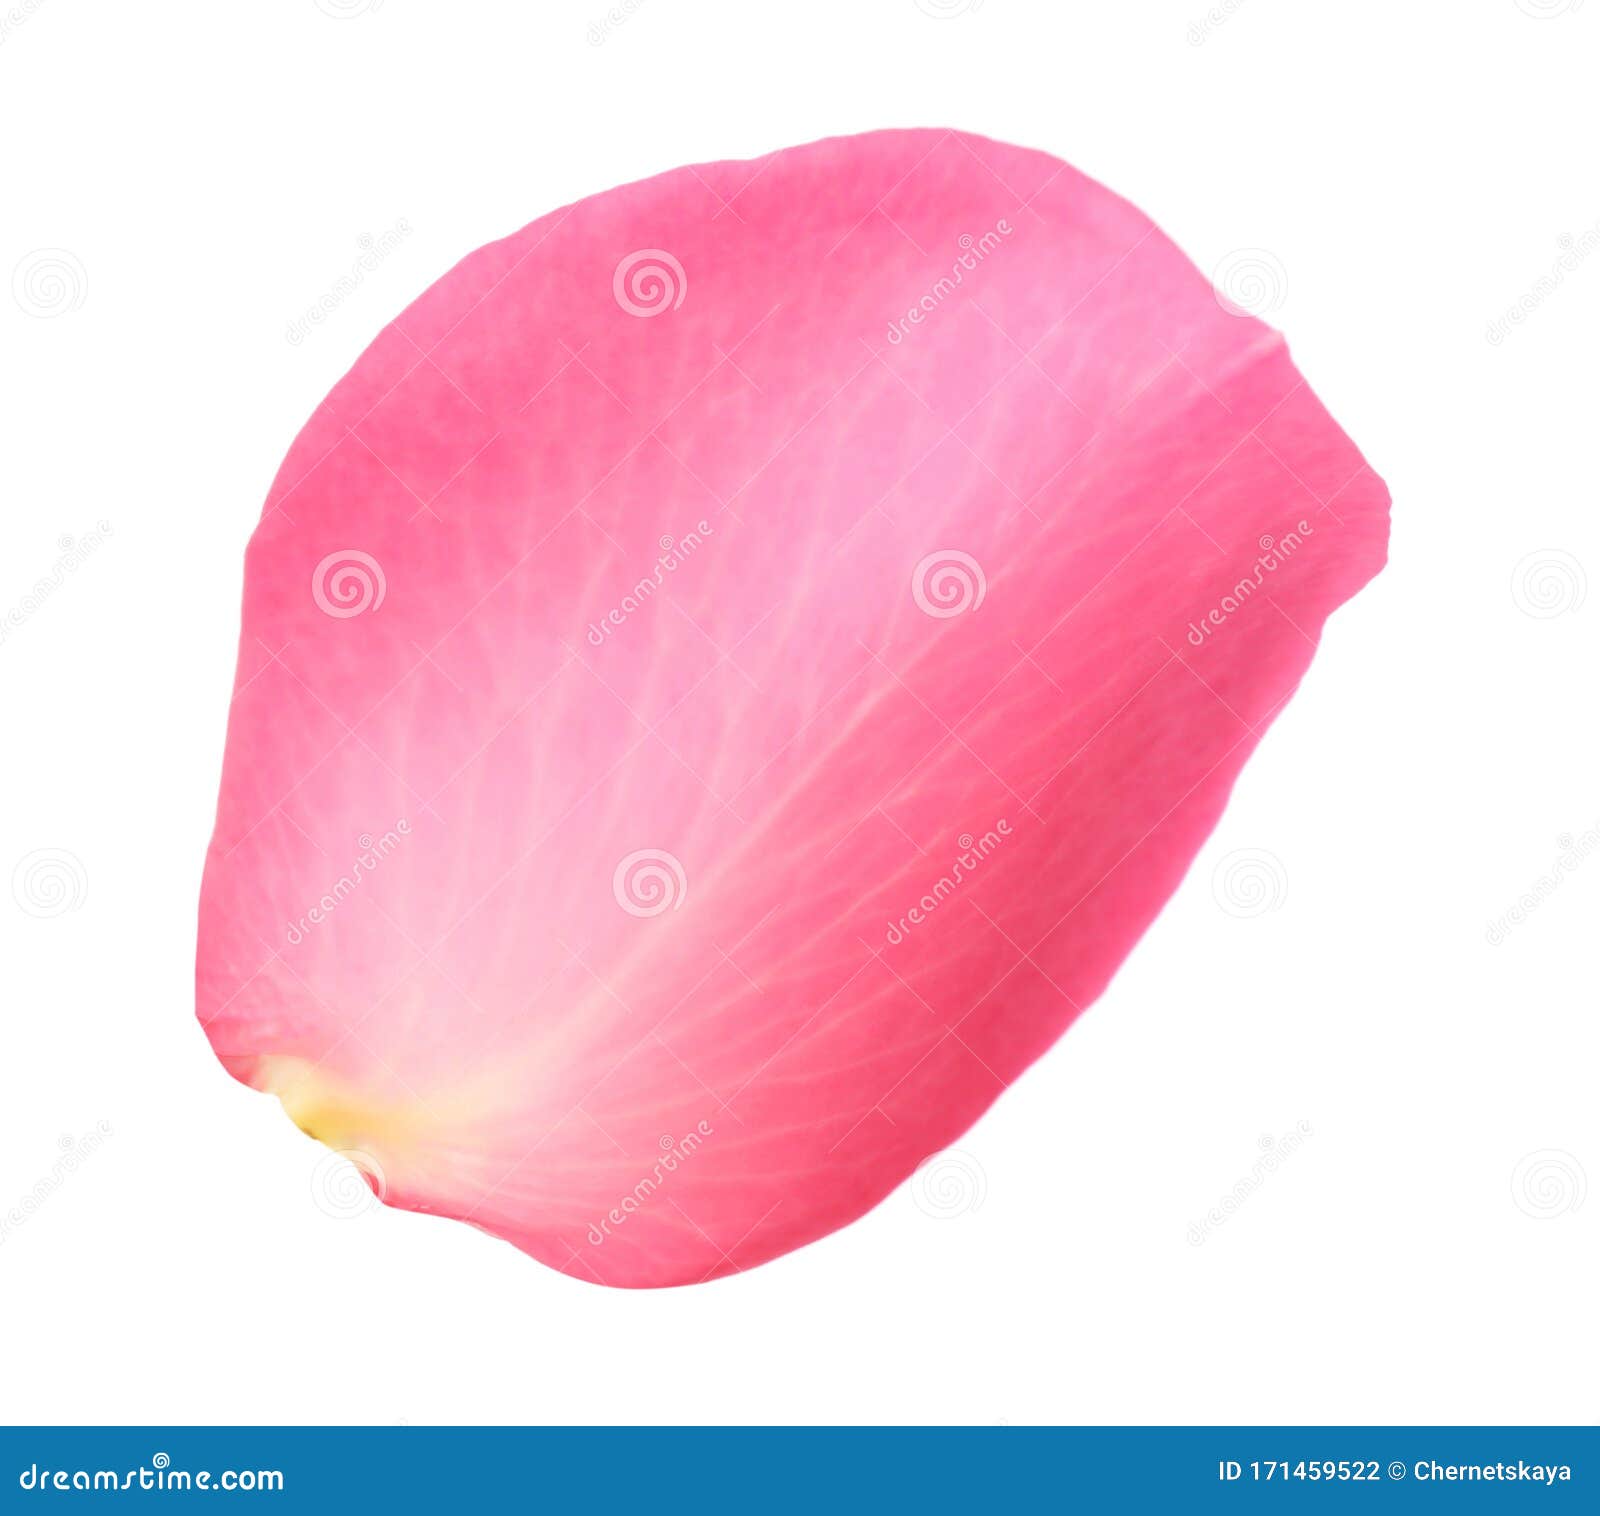 fresh pink rose petal 